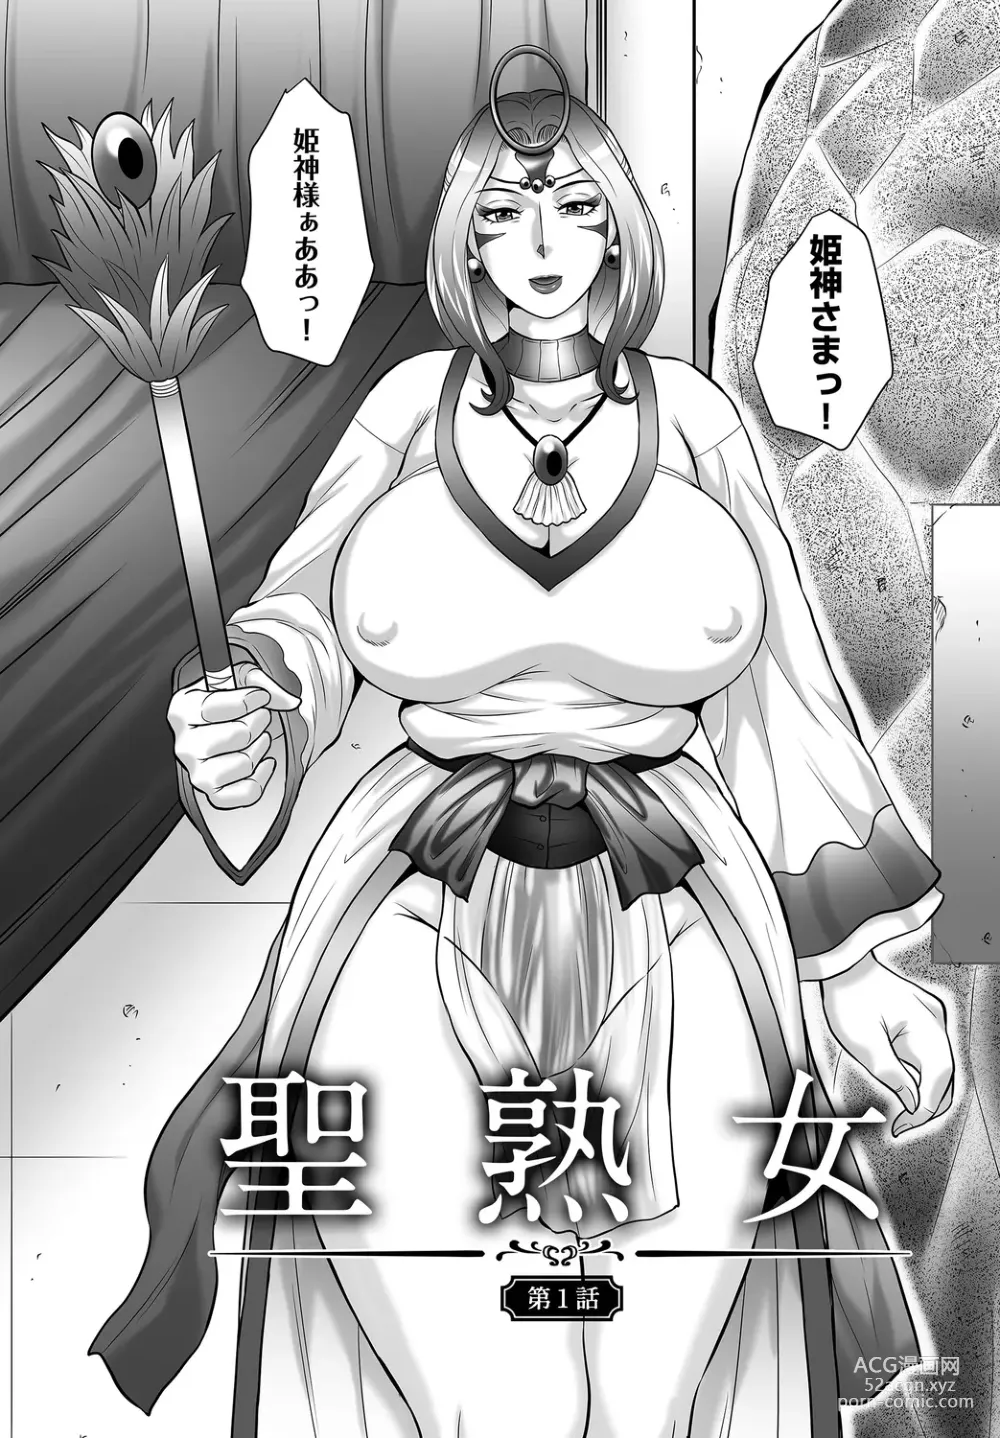 Page 6 of manga Midaragami Seinaru Jukujo ga Mesubuta Ika no Nanika ni Ochiru made